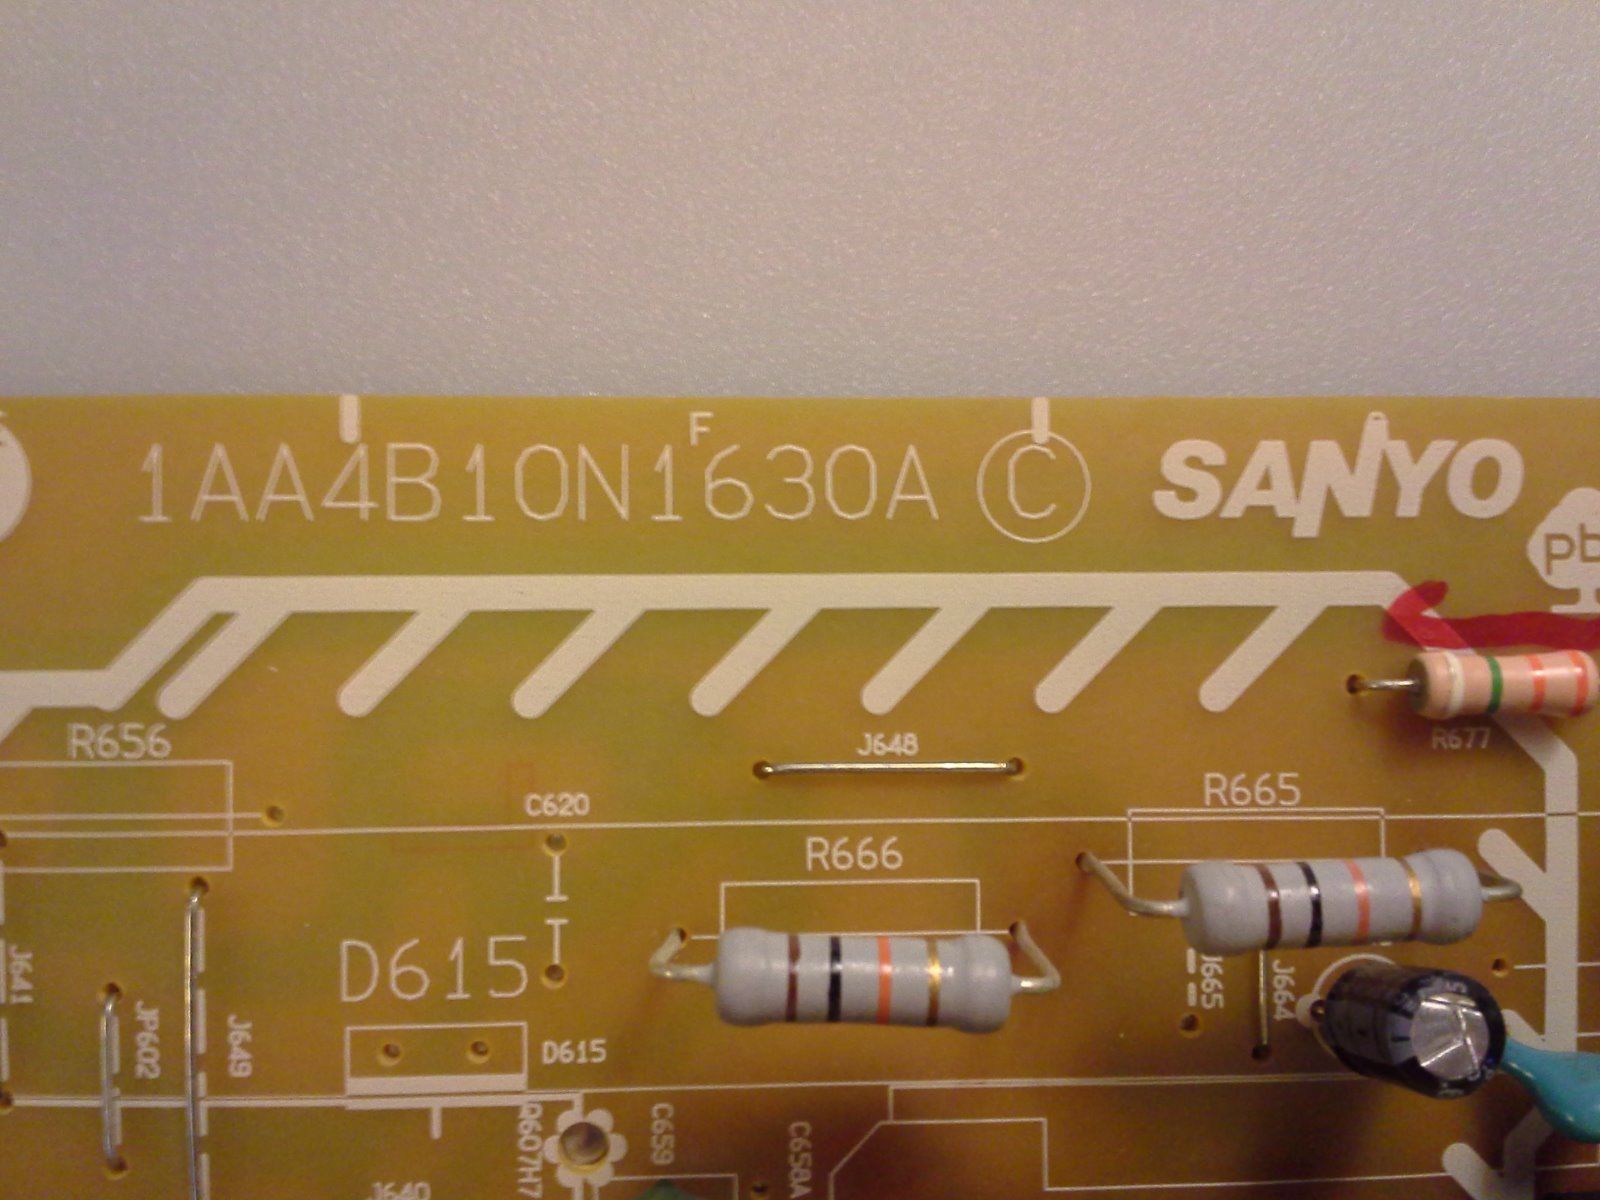 Sanyo DP32746 Power Supply Board 1AA4B10N1630A N3HF - Click Image to Close